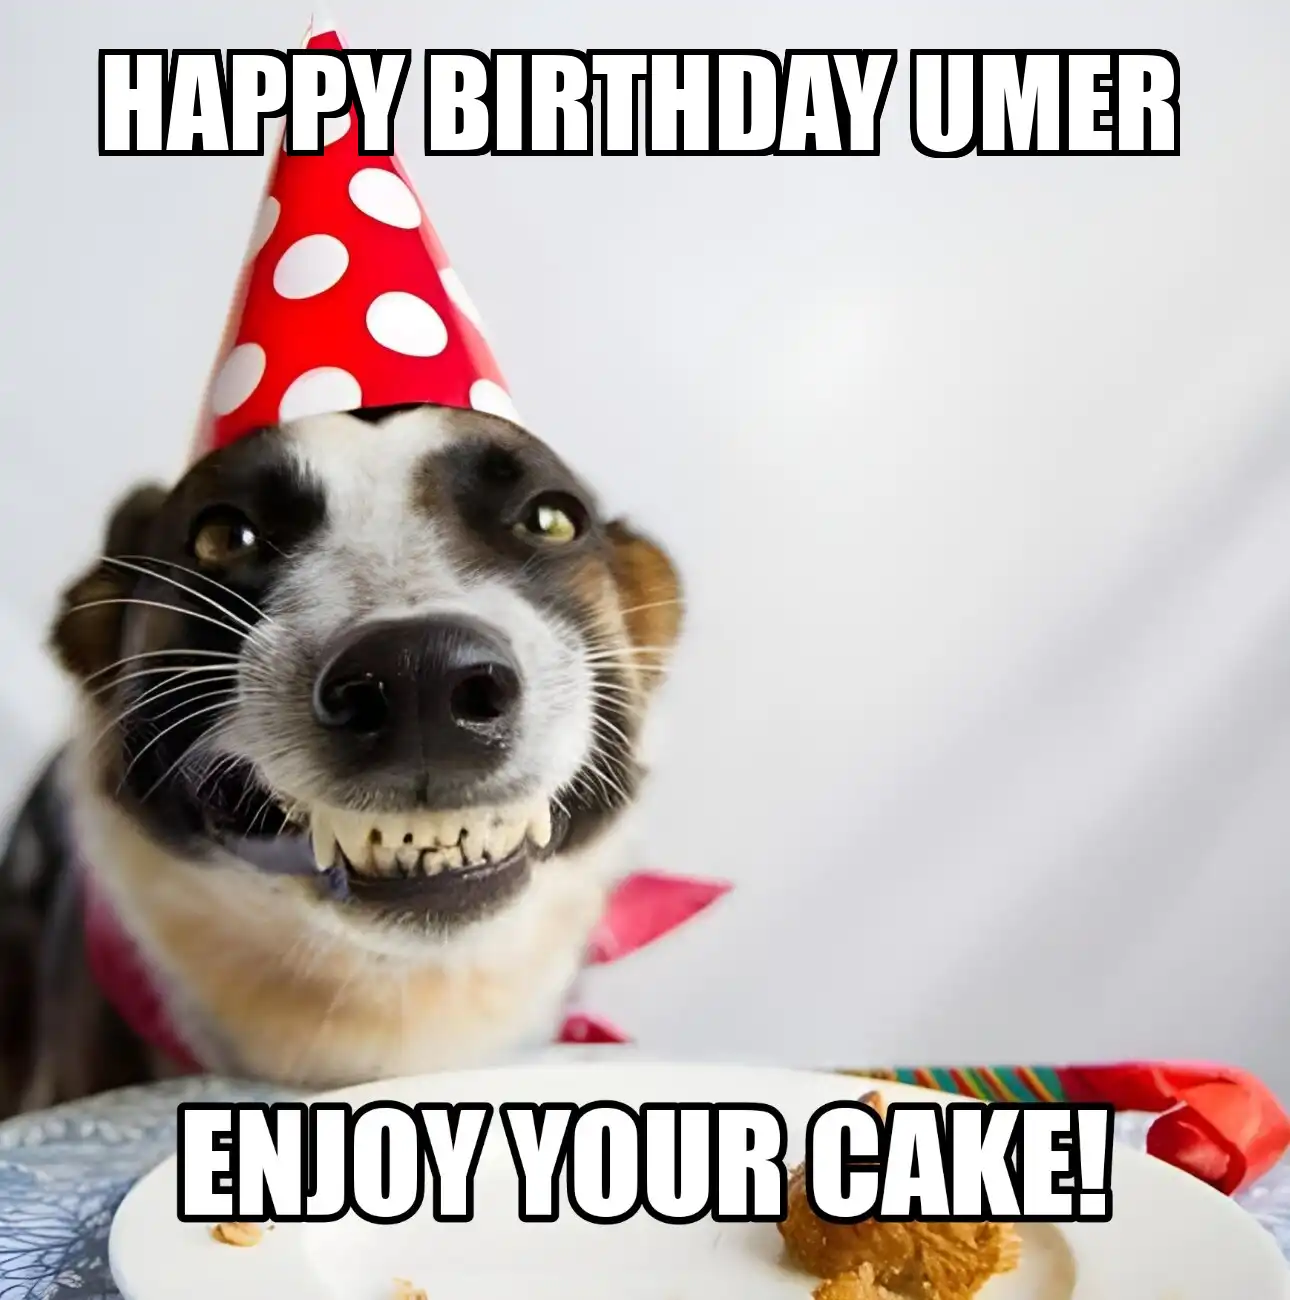 Happy Birthday Umer Enjoy Your Cake Dog Meme